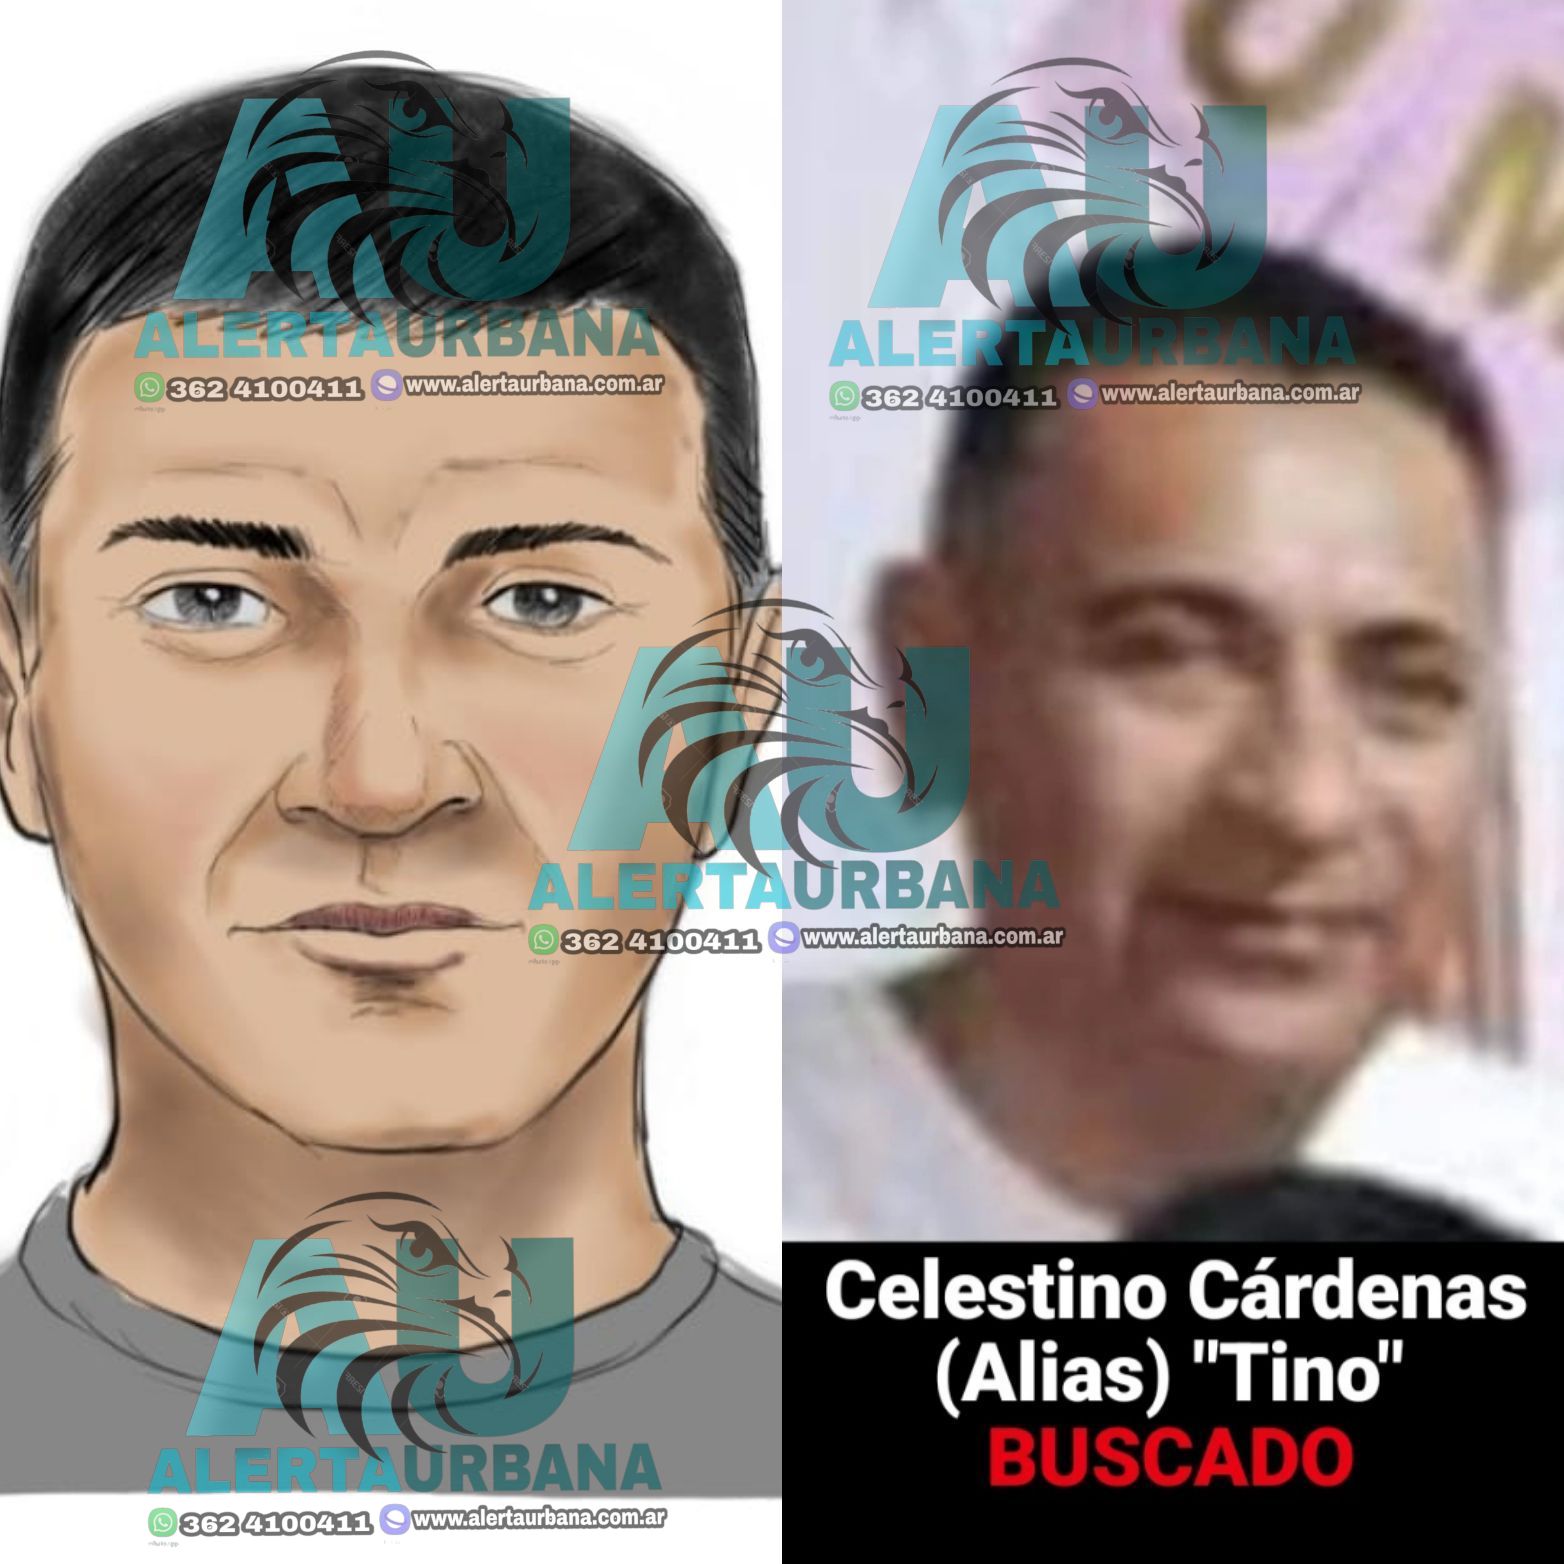 La justicia busca a Celestino “Tino” Cárdenas. Investigado por estar vinculado al crimen de Fernando Francovich